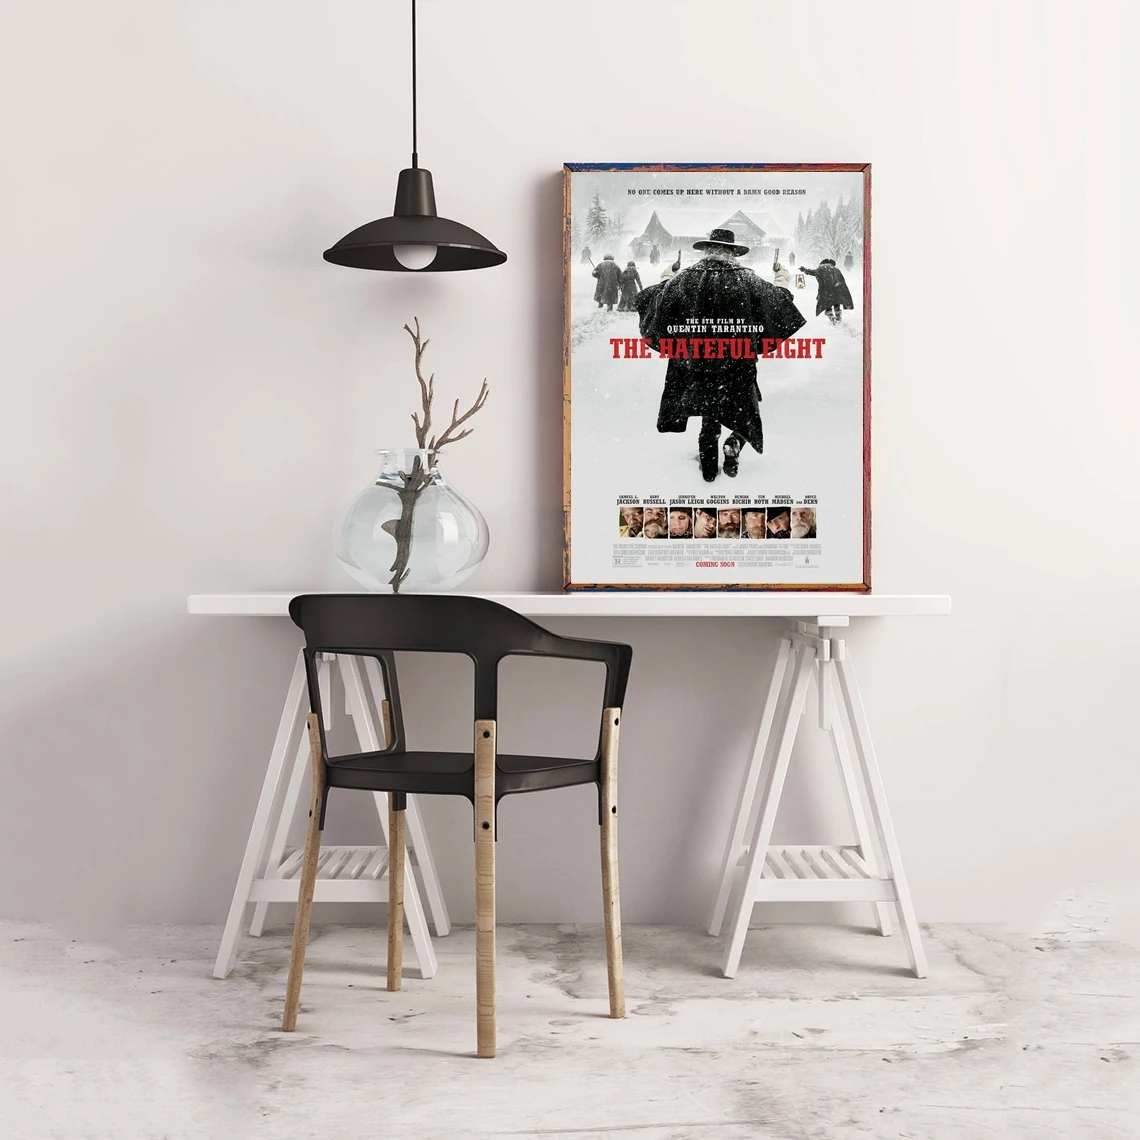 

The Hateful Eight фильм плакат классический популярный Холст плакат настенная живопись Домашний Декор (без рамки)